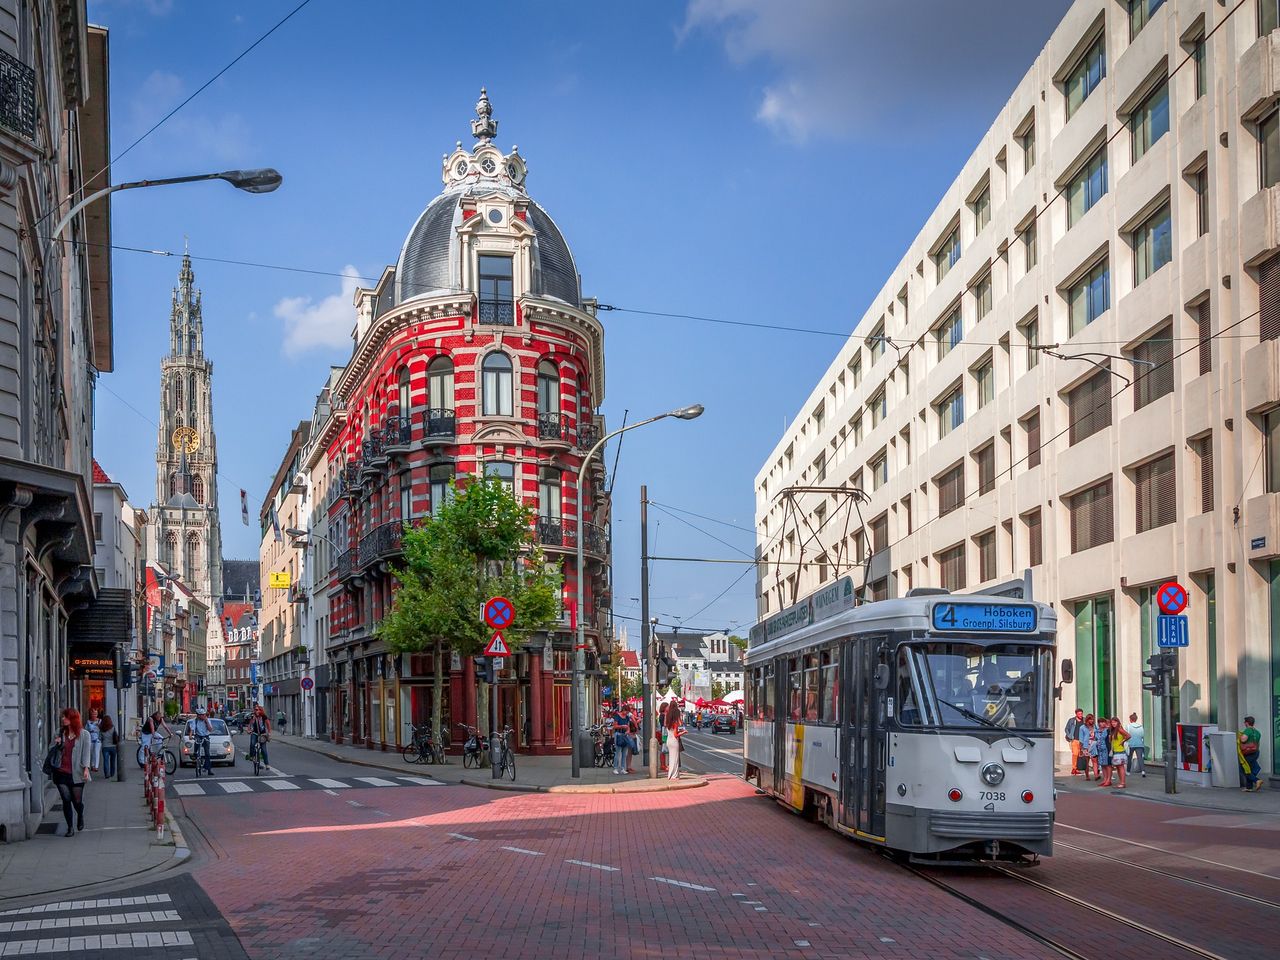 7 Tage die Hafenmetropole Antwerpen erkunden